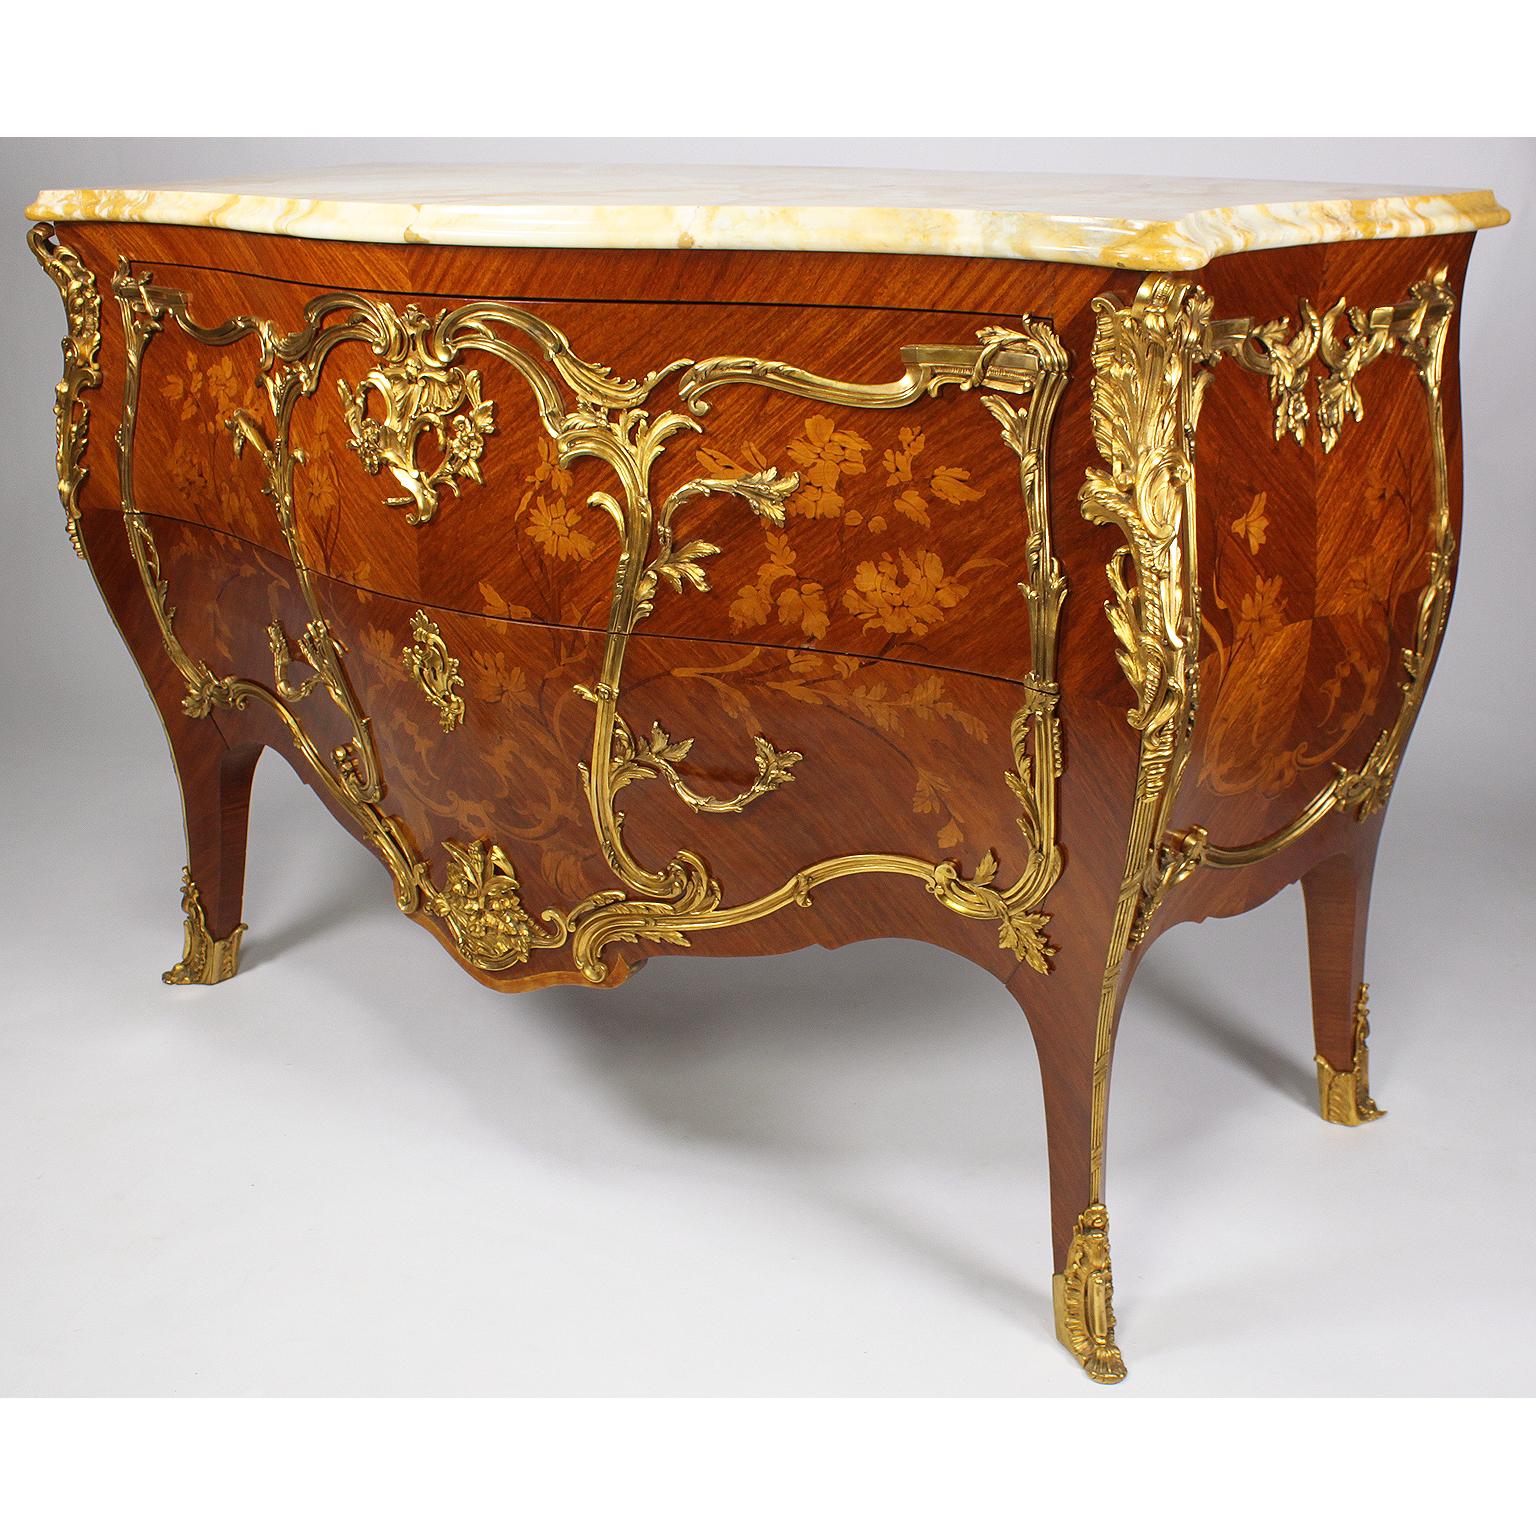 Eine feine Kommode mit zwei Schubladen im Louis XV-Stil aus Königsholz und Tulpenholz mit floralen Intarsien aus Bombé und einer Platte aus gelbem, königlich geädertem Marmor, montiert in vergoldeter Bronze. Der serpentinenförmige Korpus mit zwei